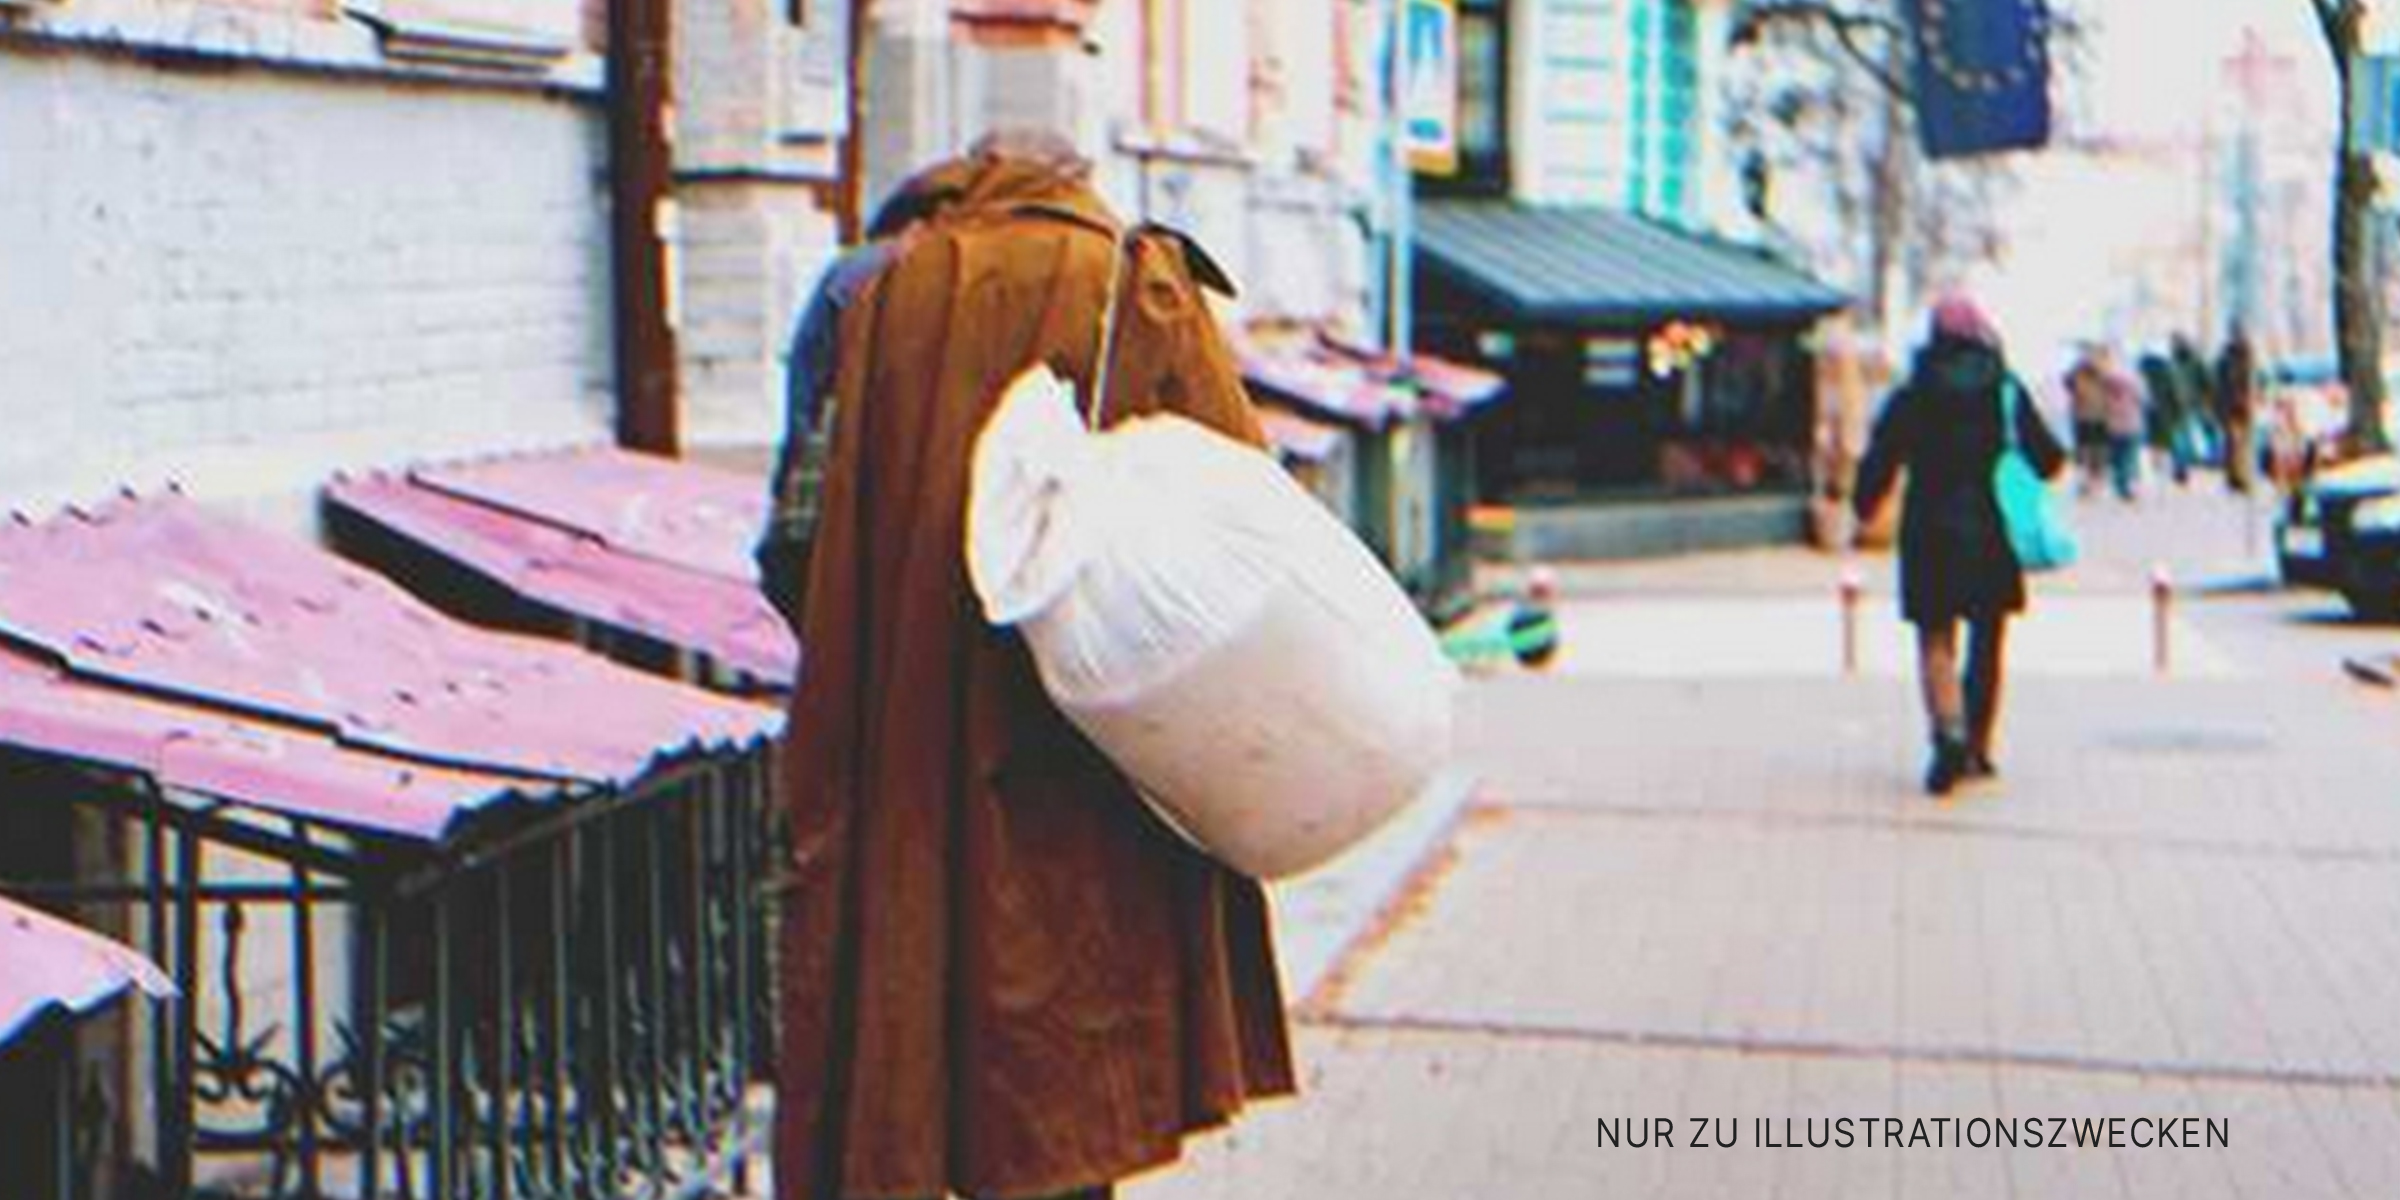 Obdachloser auf der Straße | Quelle: Shutterstock